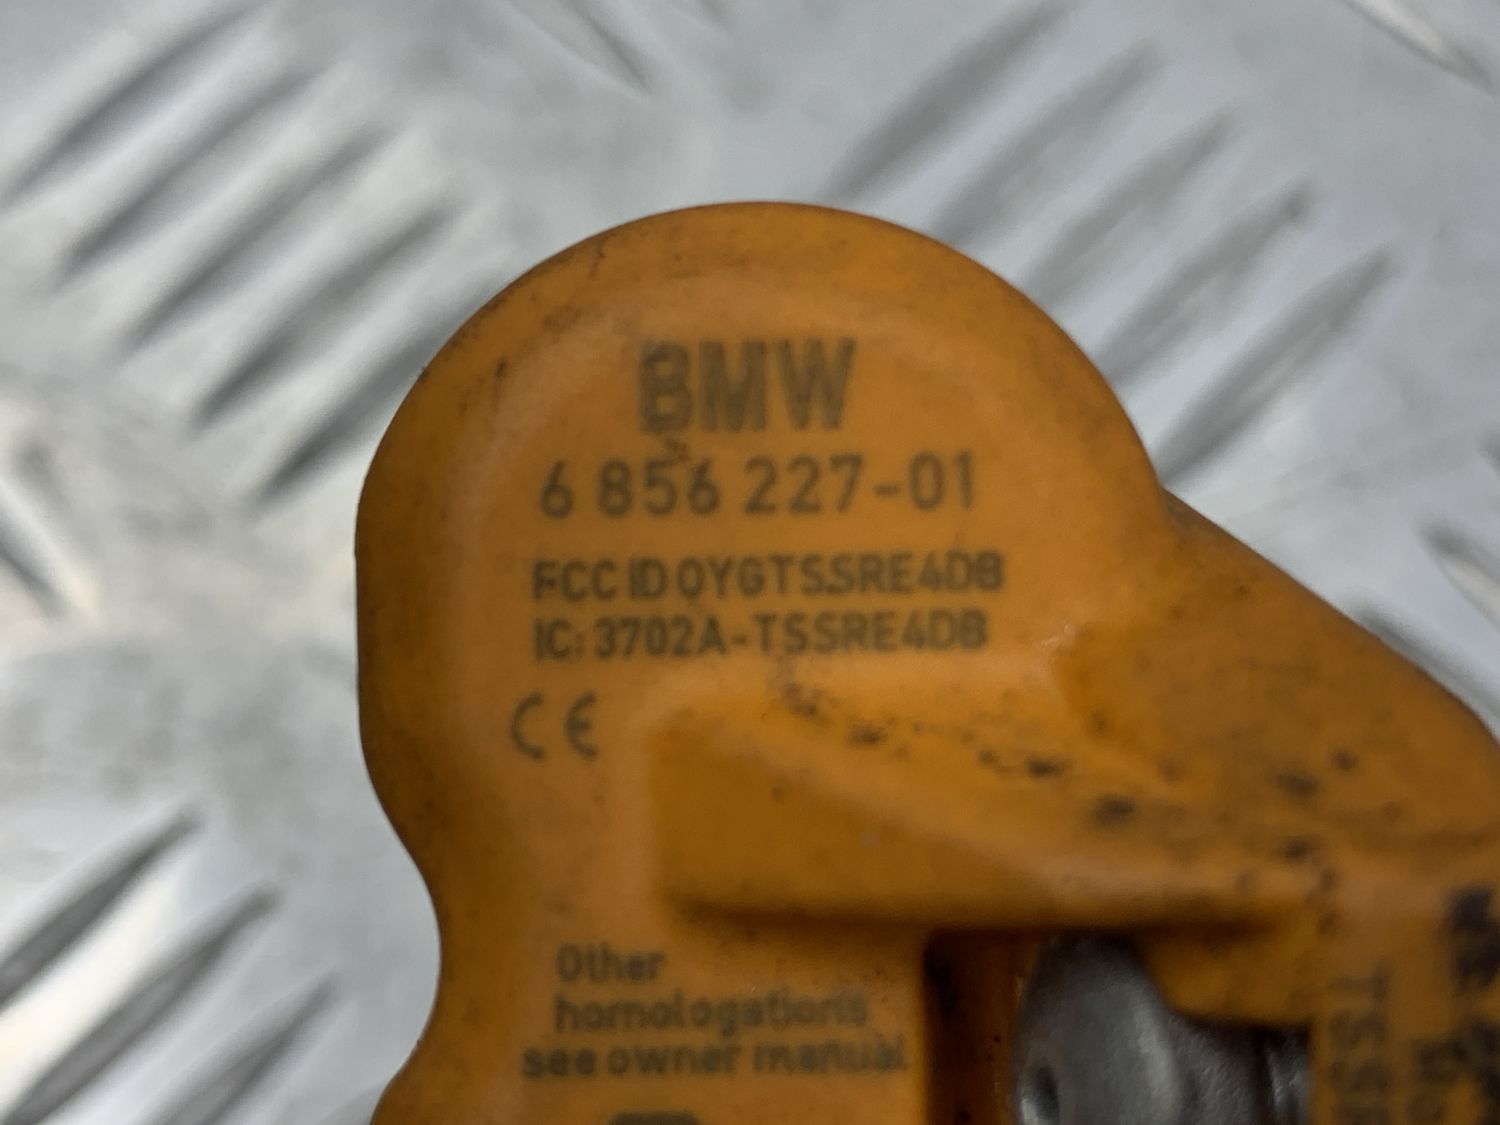 Датчик давления в шинах 685622701 для BMW 5-серия F07 2009-2013